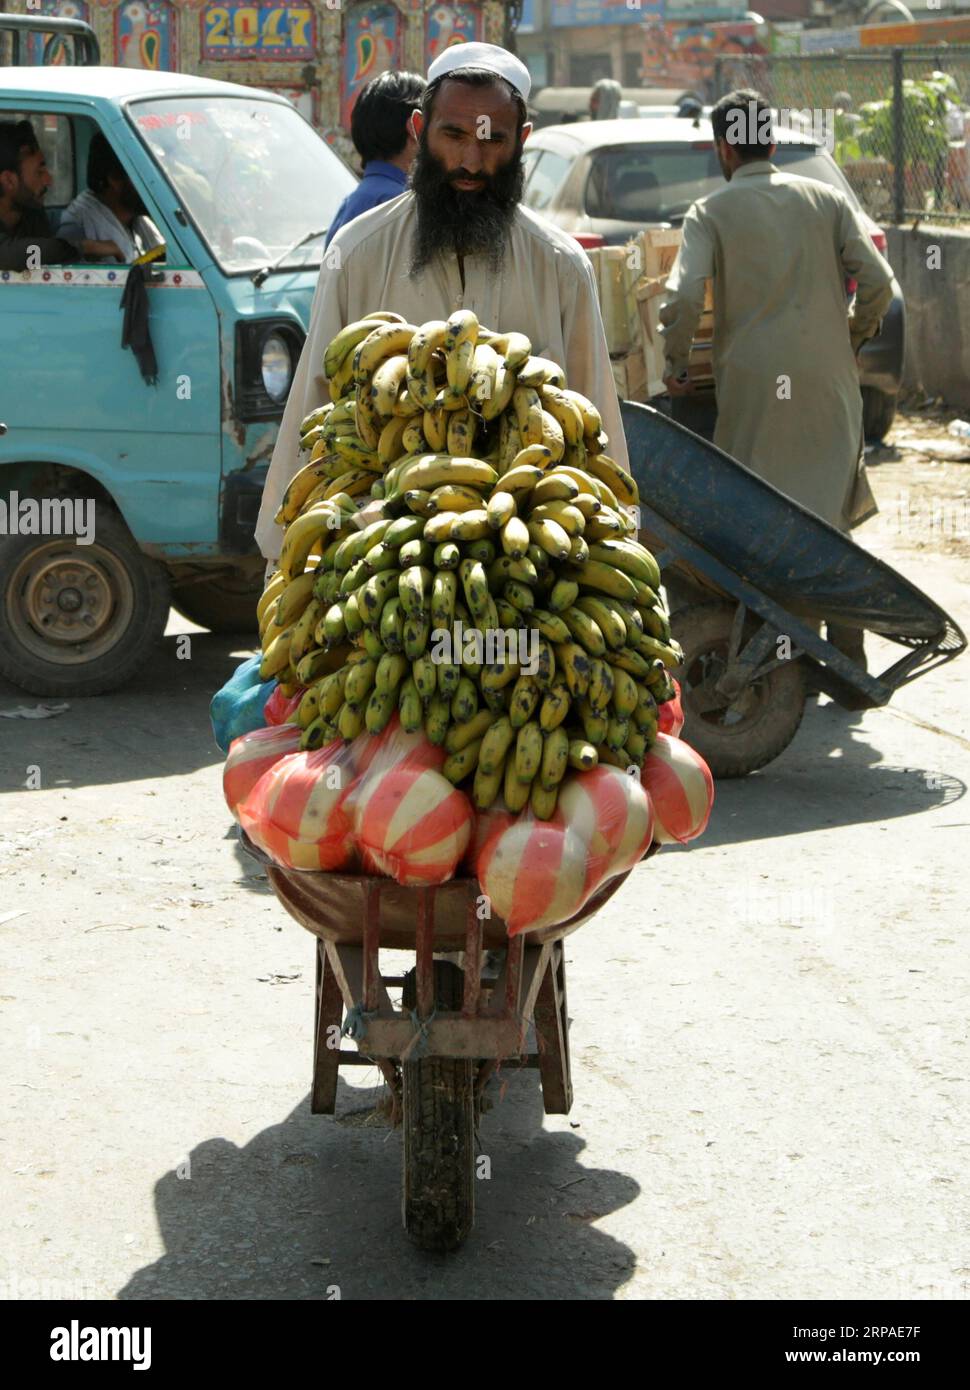 (190506) -- ISLAMABAD, le 6 mai 2019 -- un homme pousse une charrette sur un marché de fruits et légumes avant le Ramadan à Islamabad, capitale du Pakistan, le 6 mai 2019.) PAKISTAN-ISLAMABAD-RAMADAN-MARCHÉ AhmadxKamal PUBLICATIONxNOTxINxCHN Banque D'Images